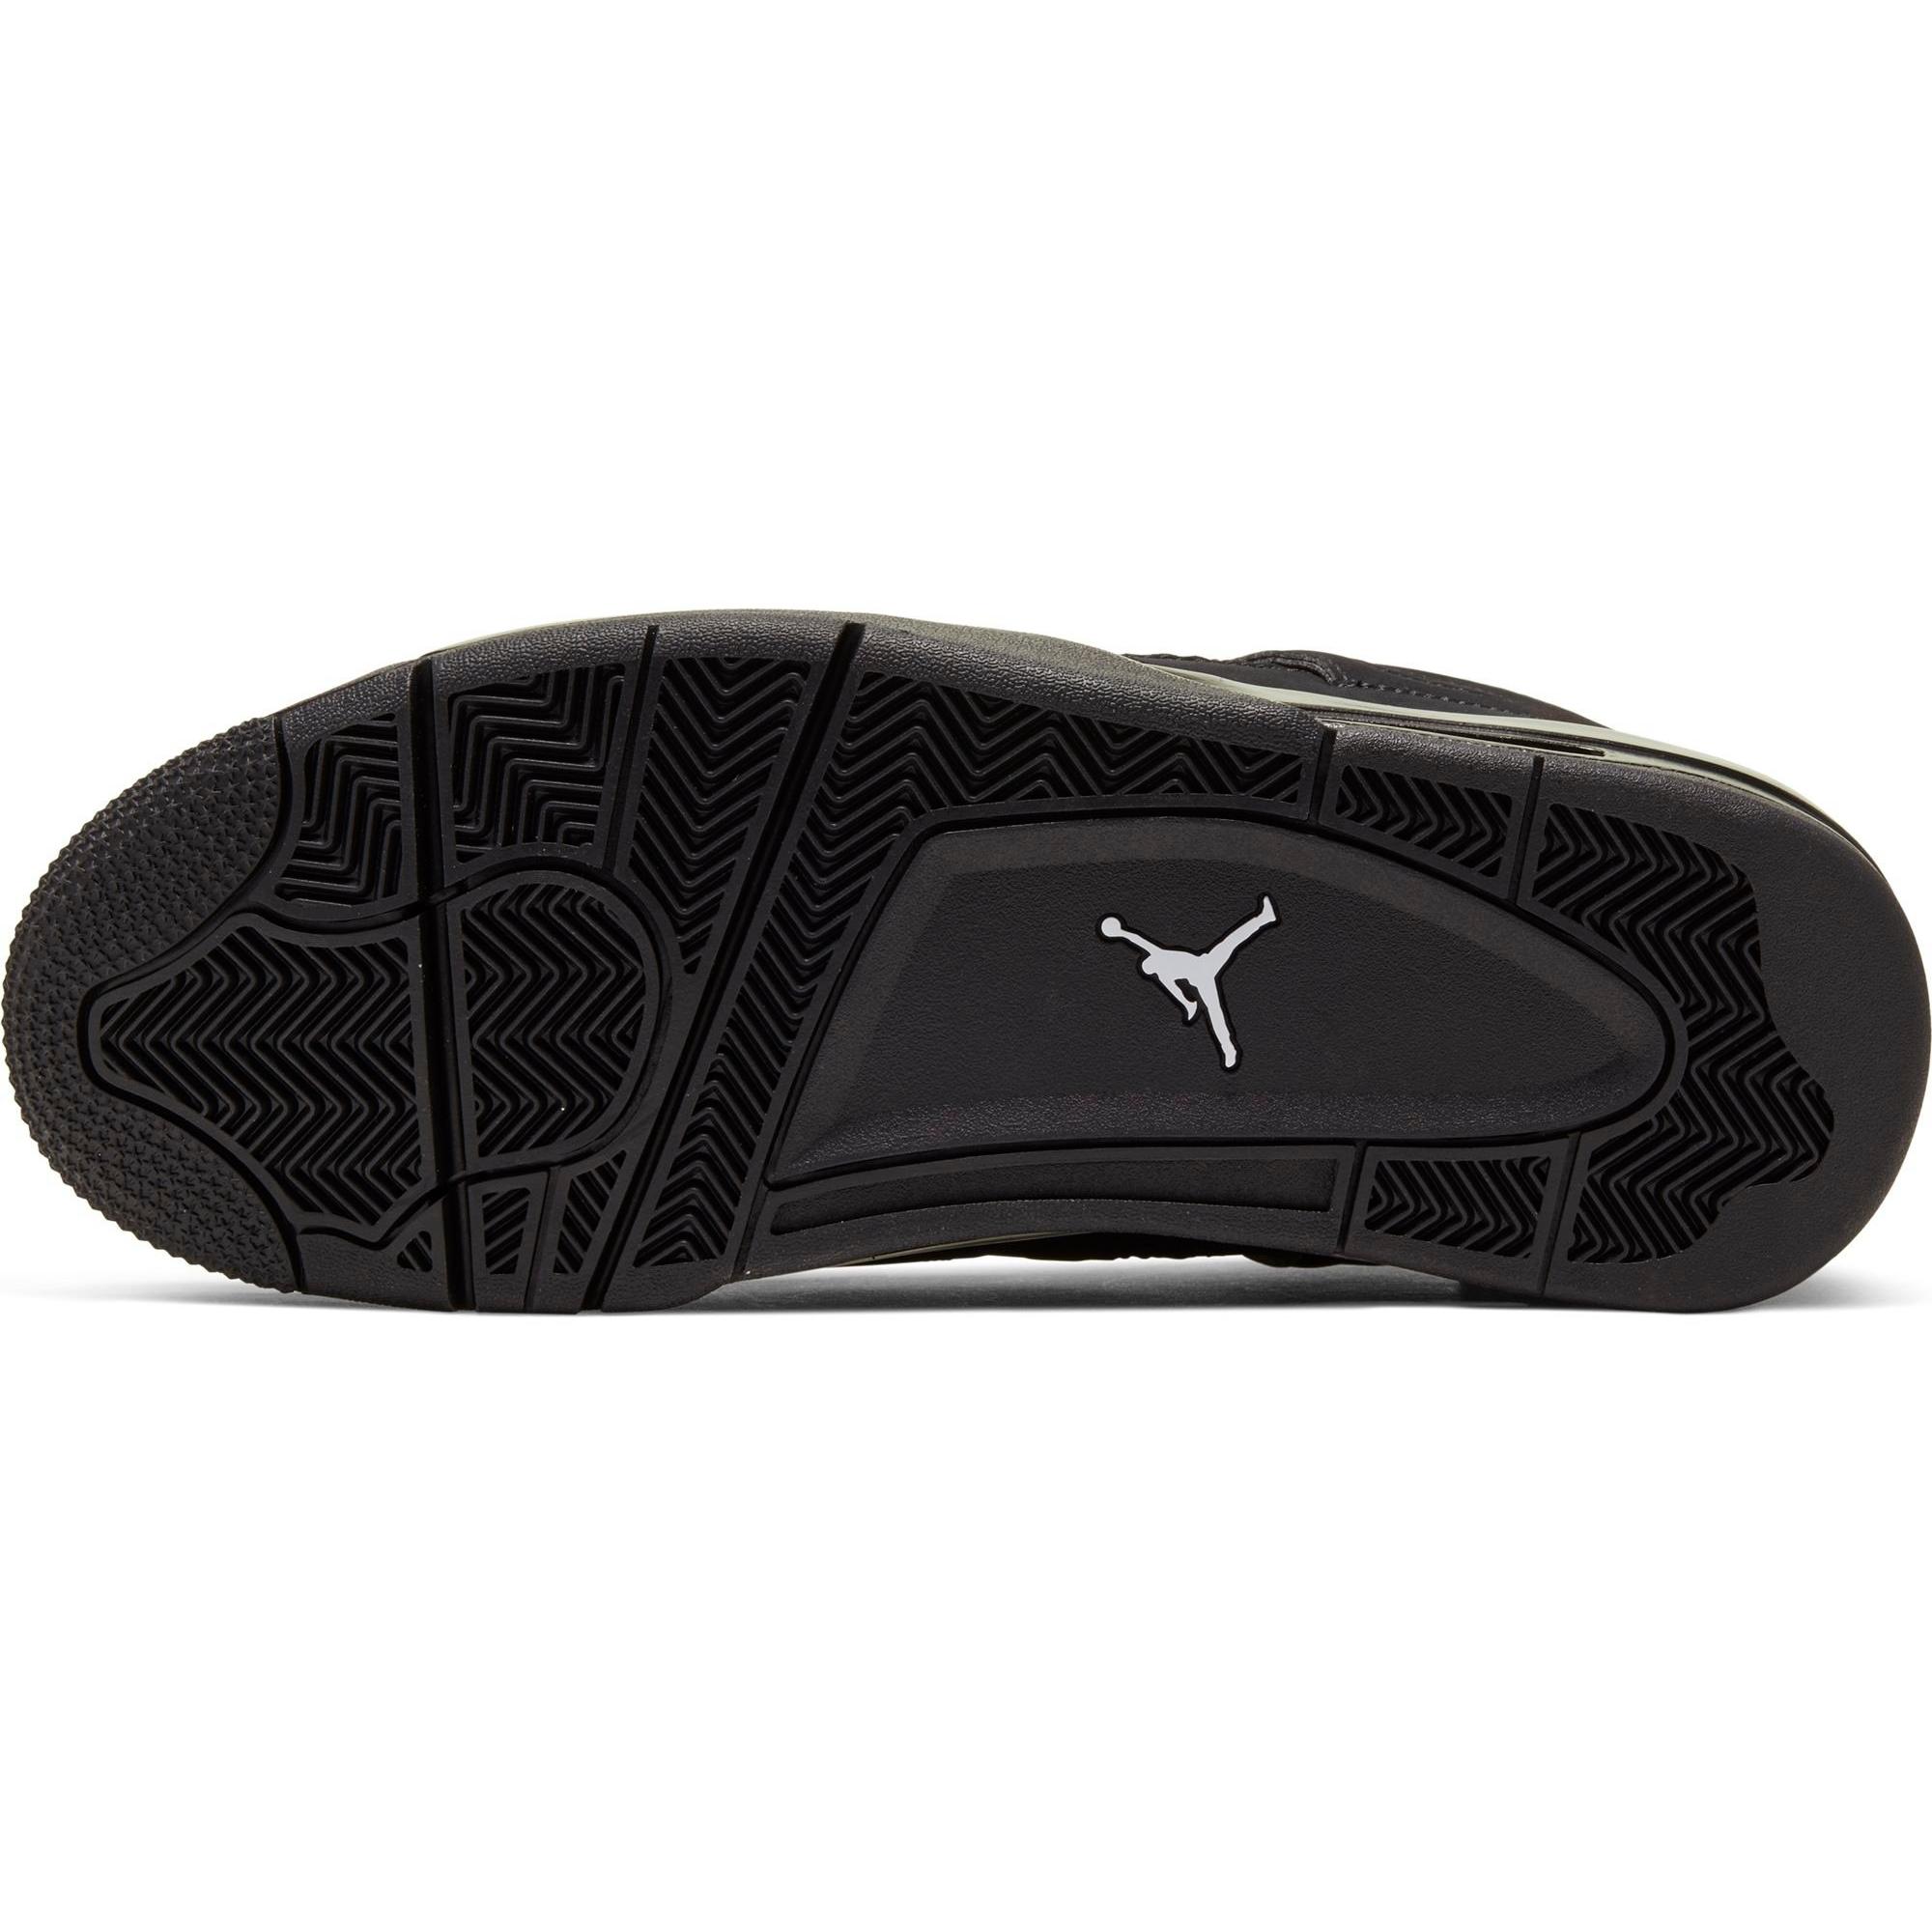 Sneakers Release – Air Jordan 4 Retro “Black Cat” 